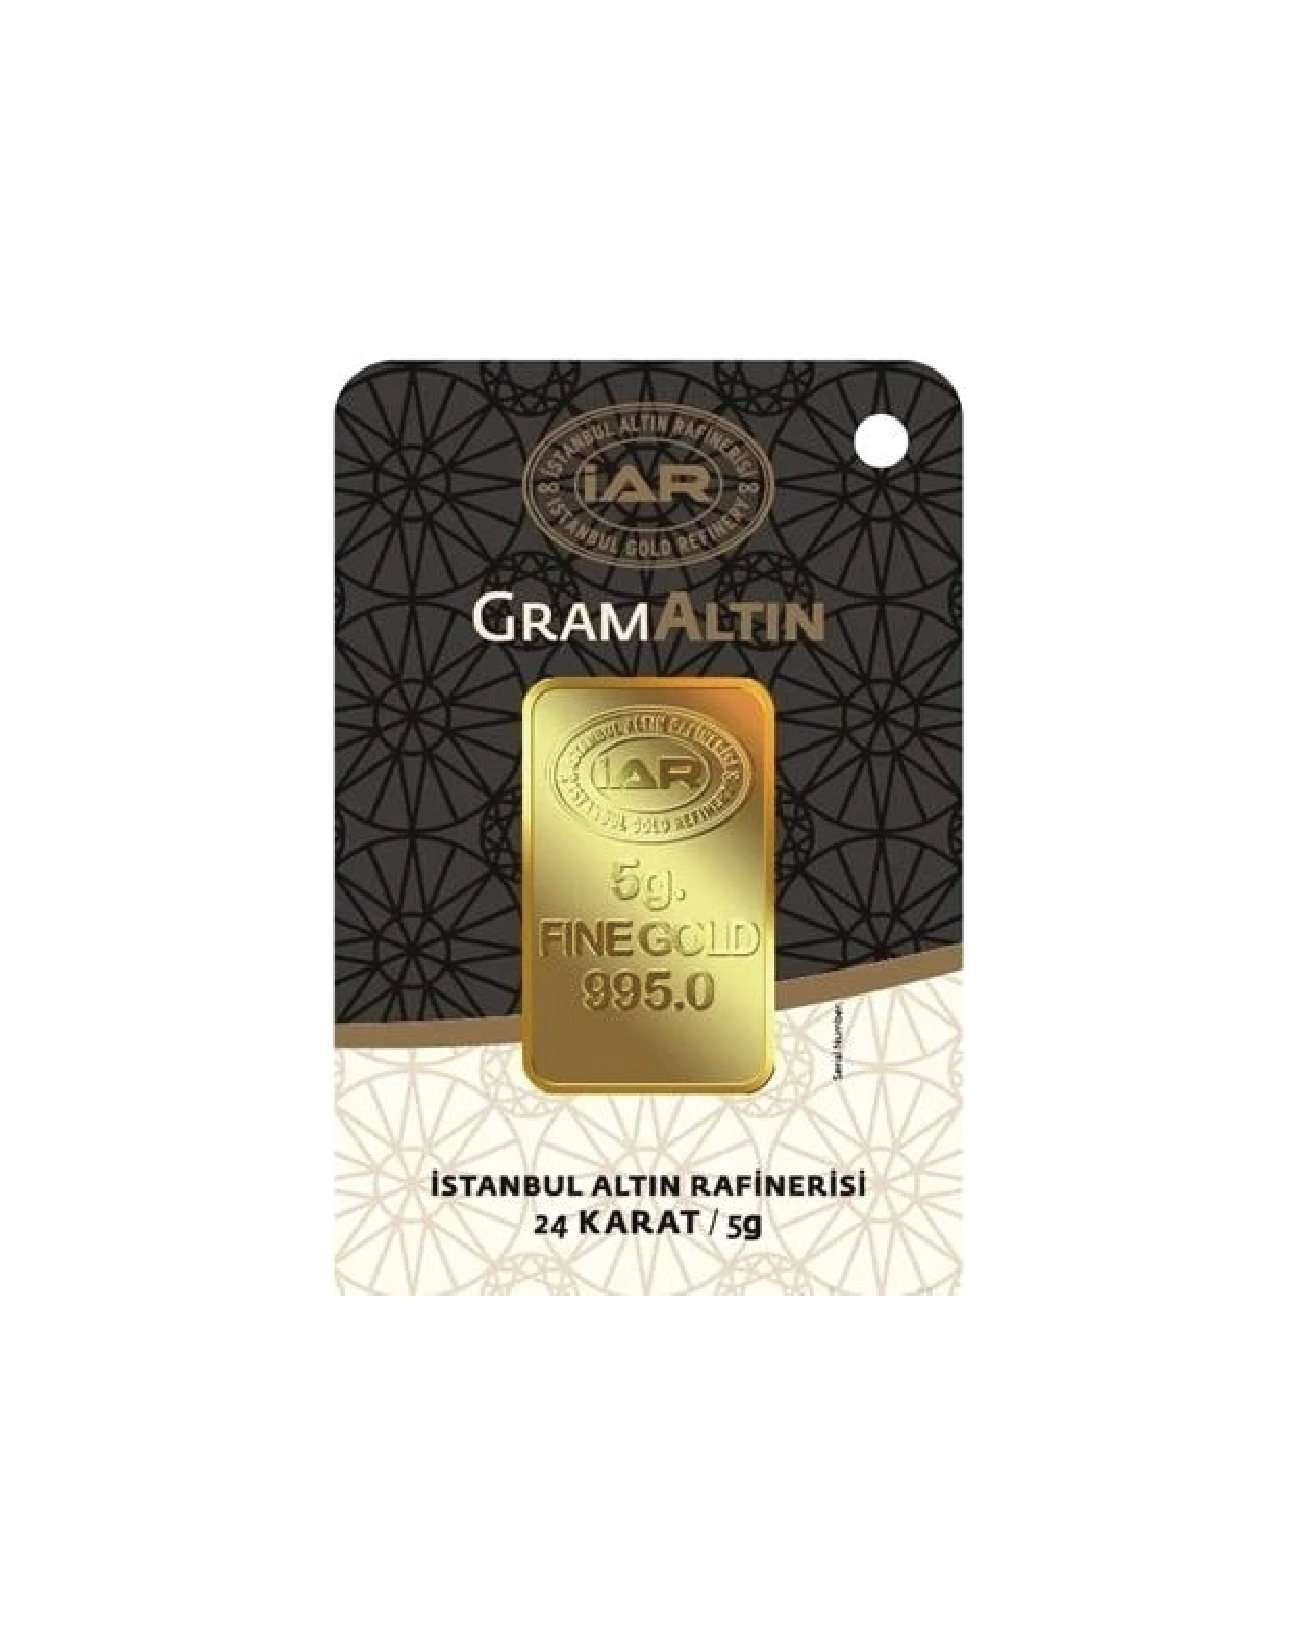 IAR Gram Altın 5 g. Fine Gold 24 Karat